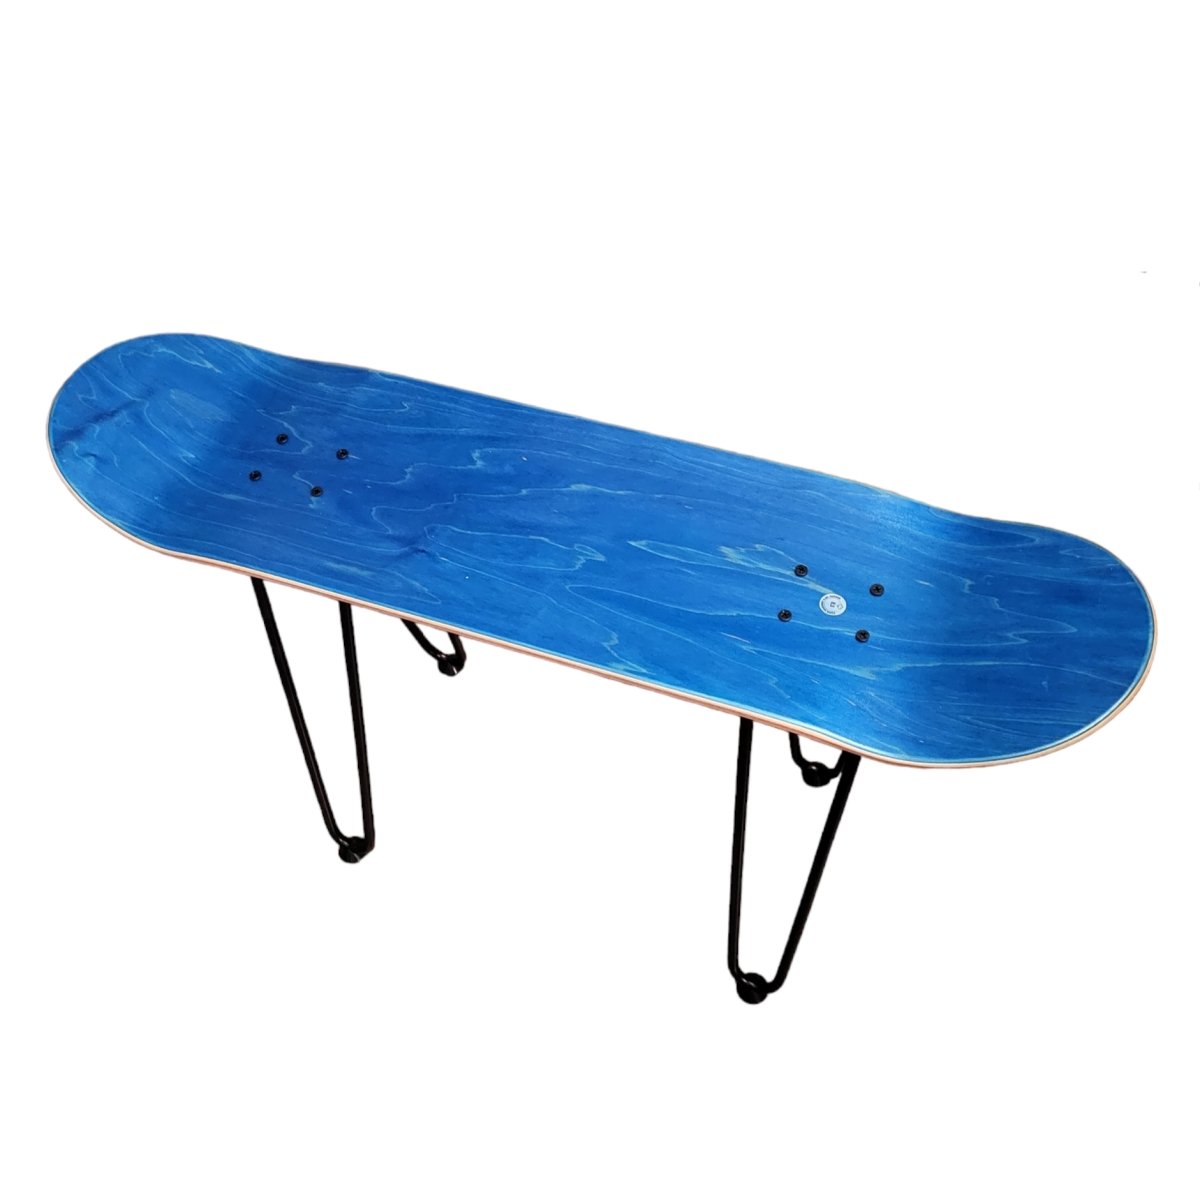 Beine für Skateboard Hocker oder Beistelltisch - Hocker - Rollbrett Mission